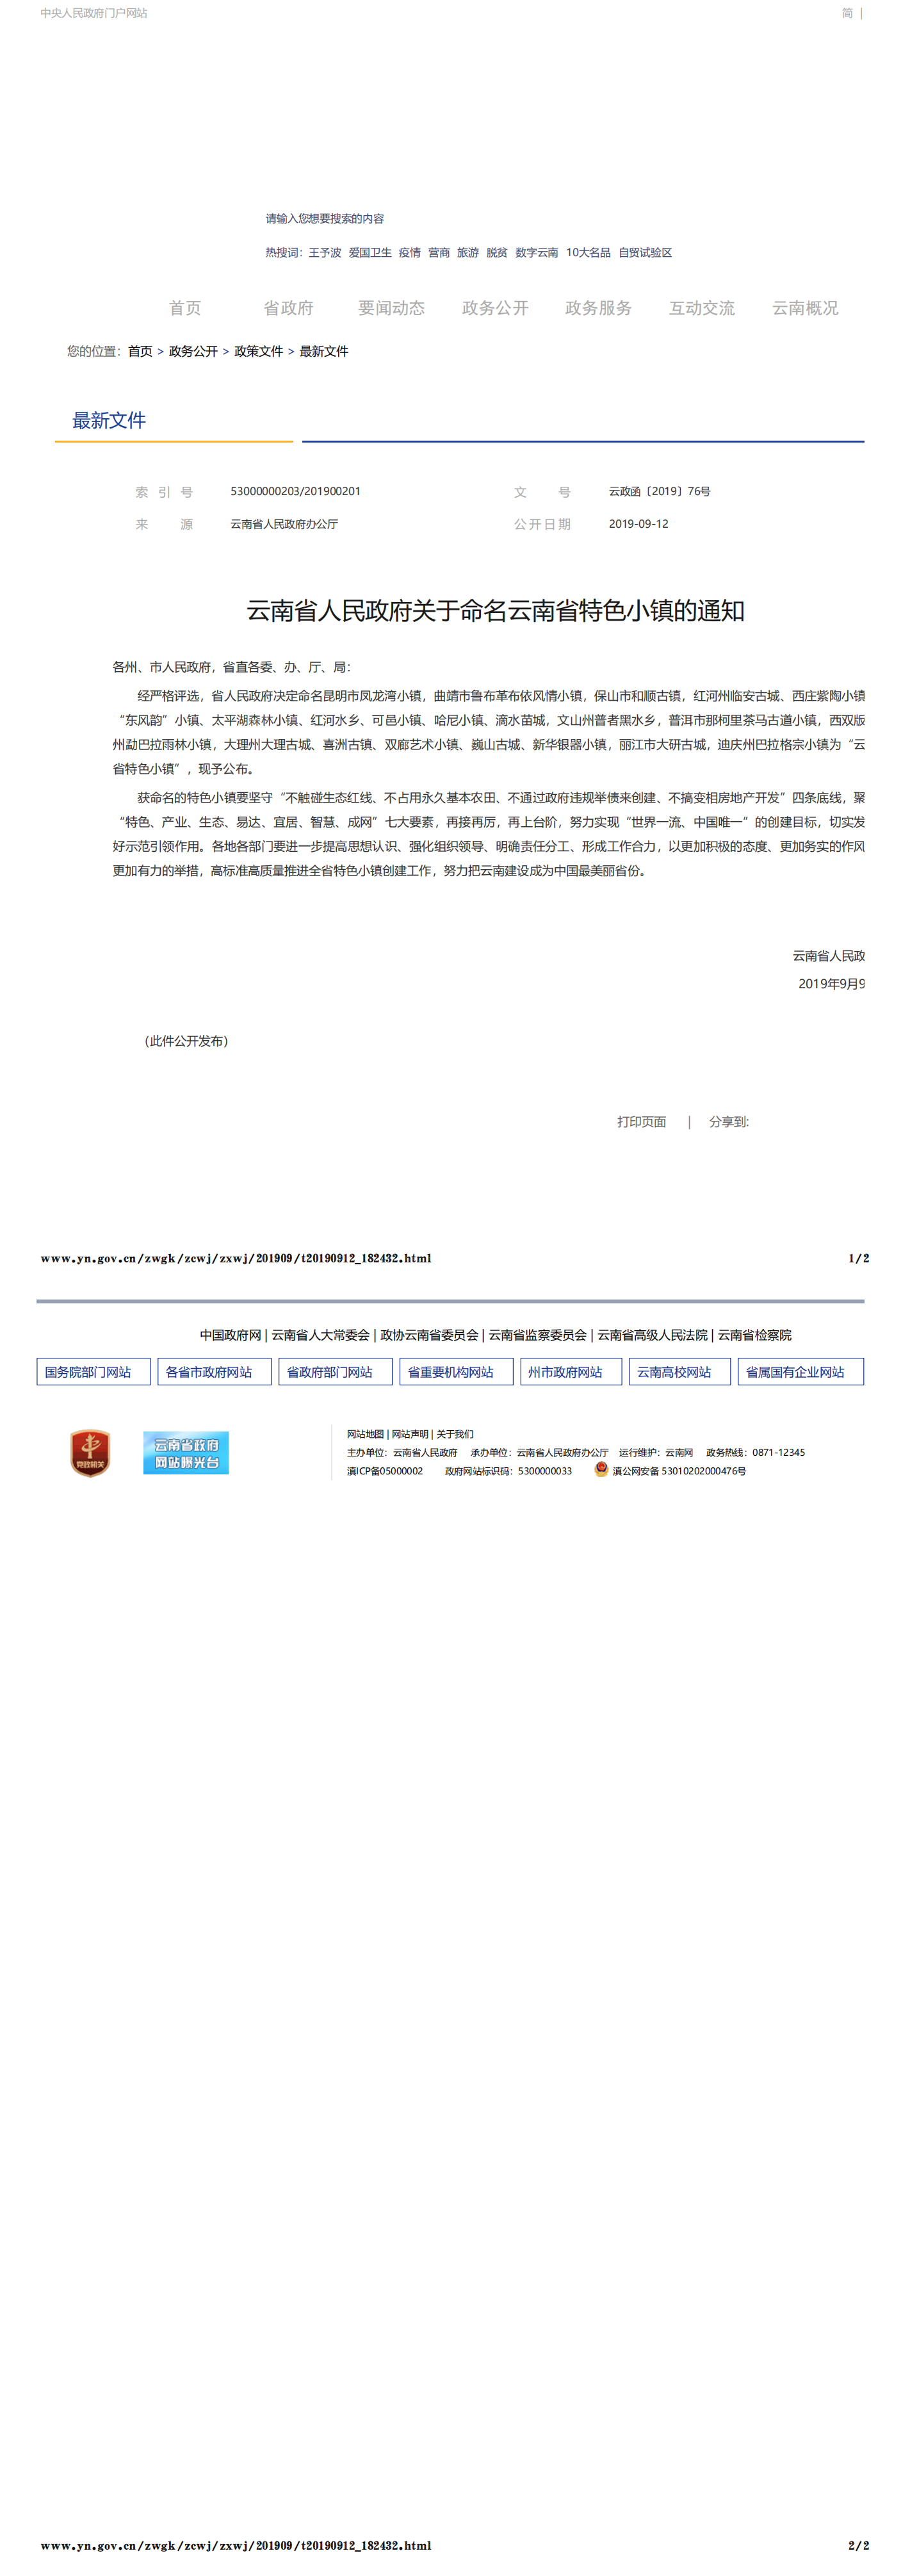 云南省人民政府关于命名云南省特色小镇的通知